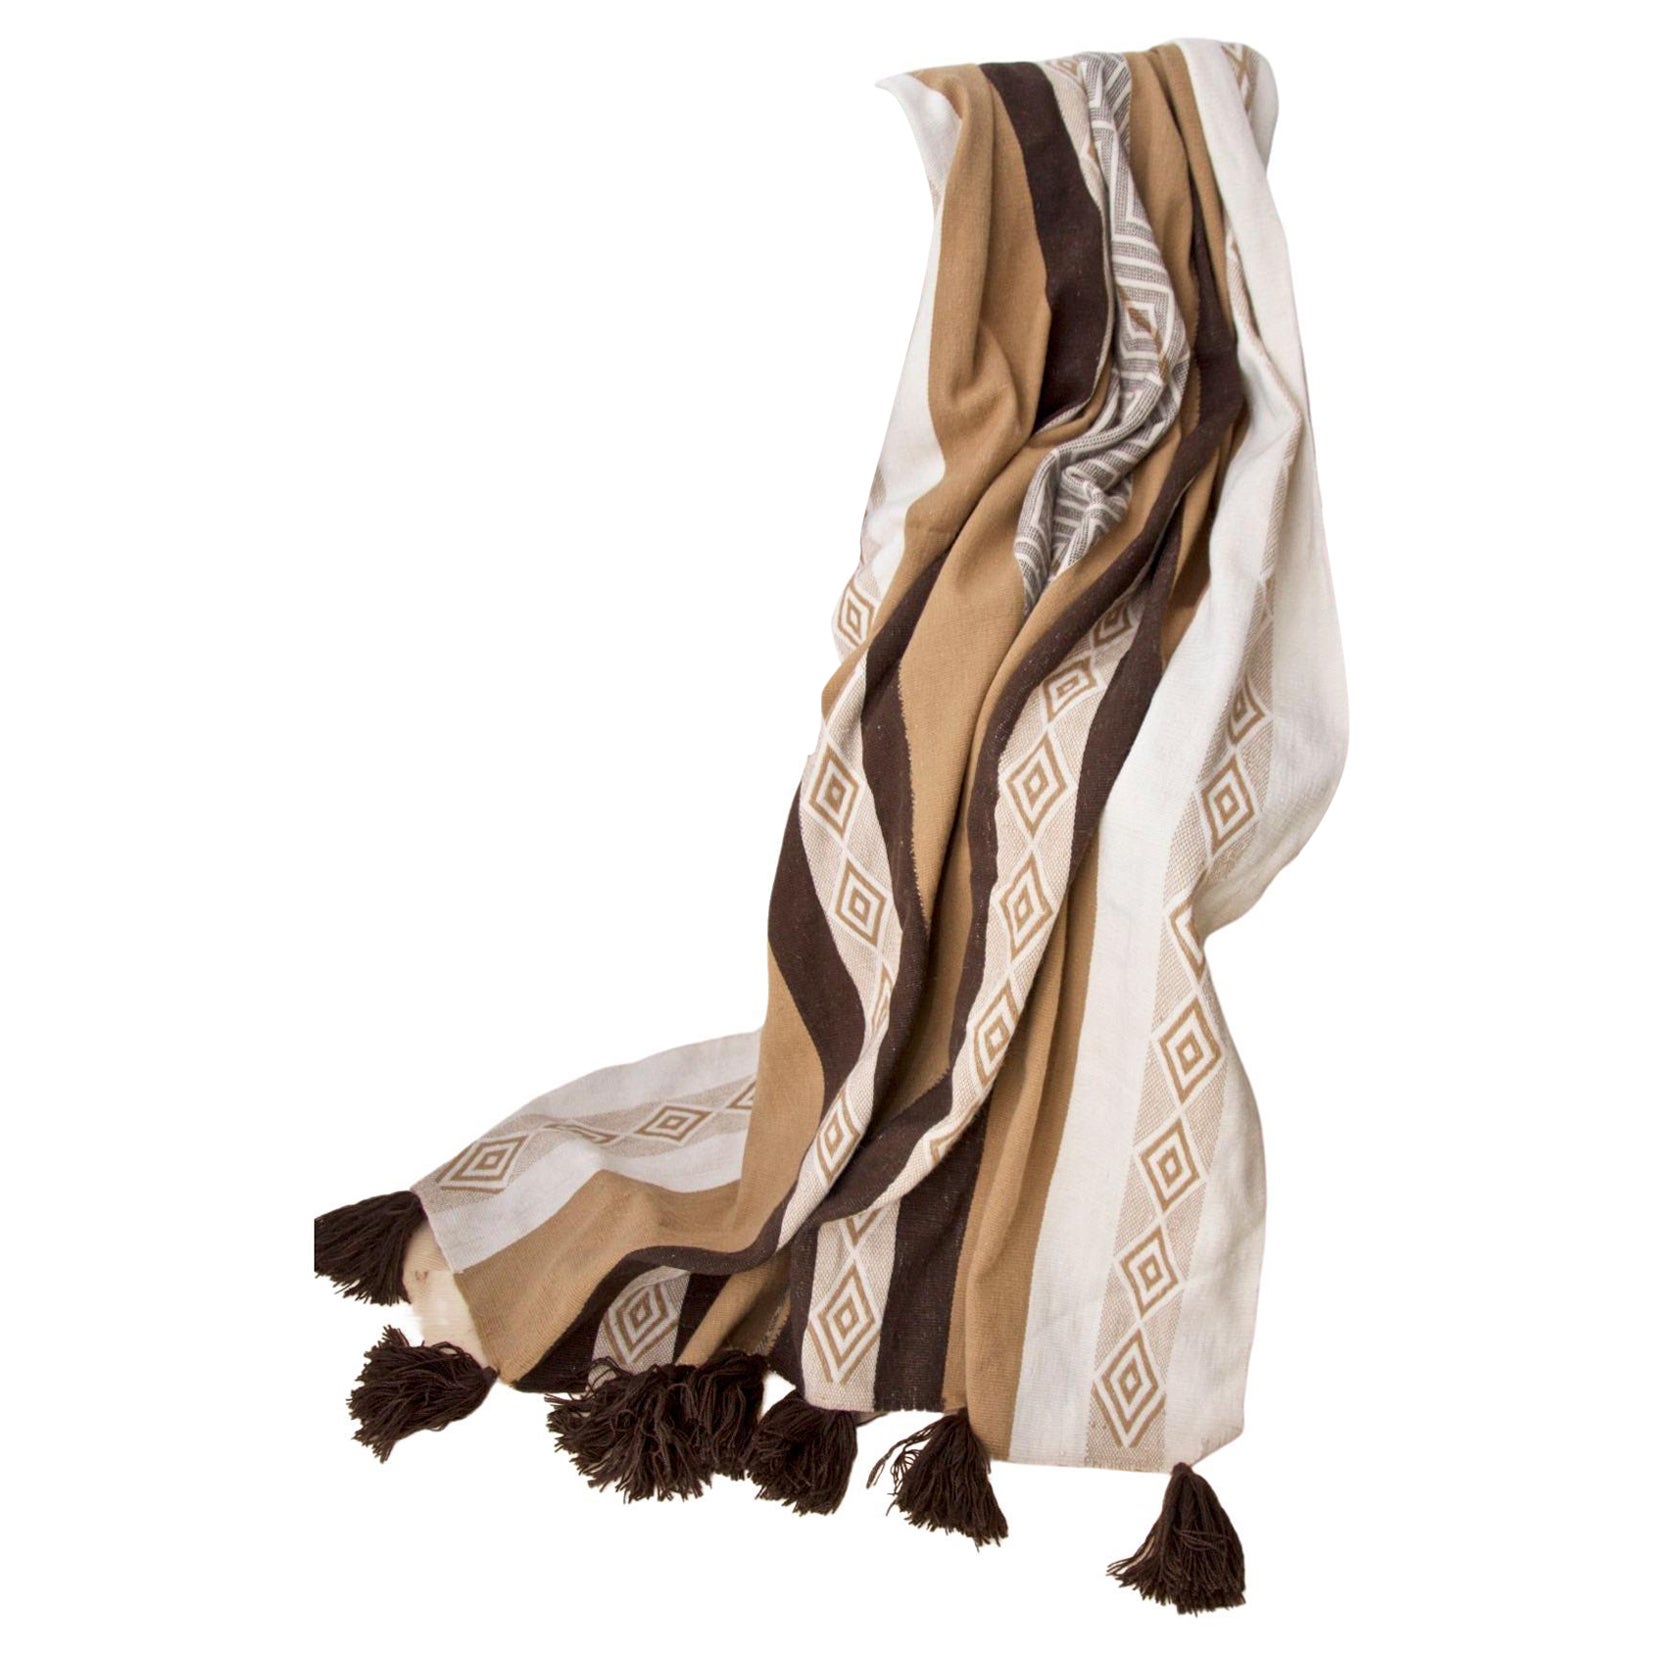 Handwoven Brown Alpaca Wool Throw Blanket by Frida & Blu